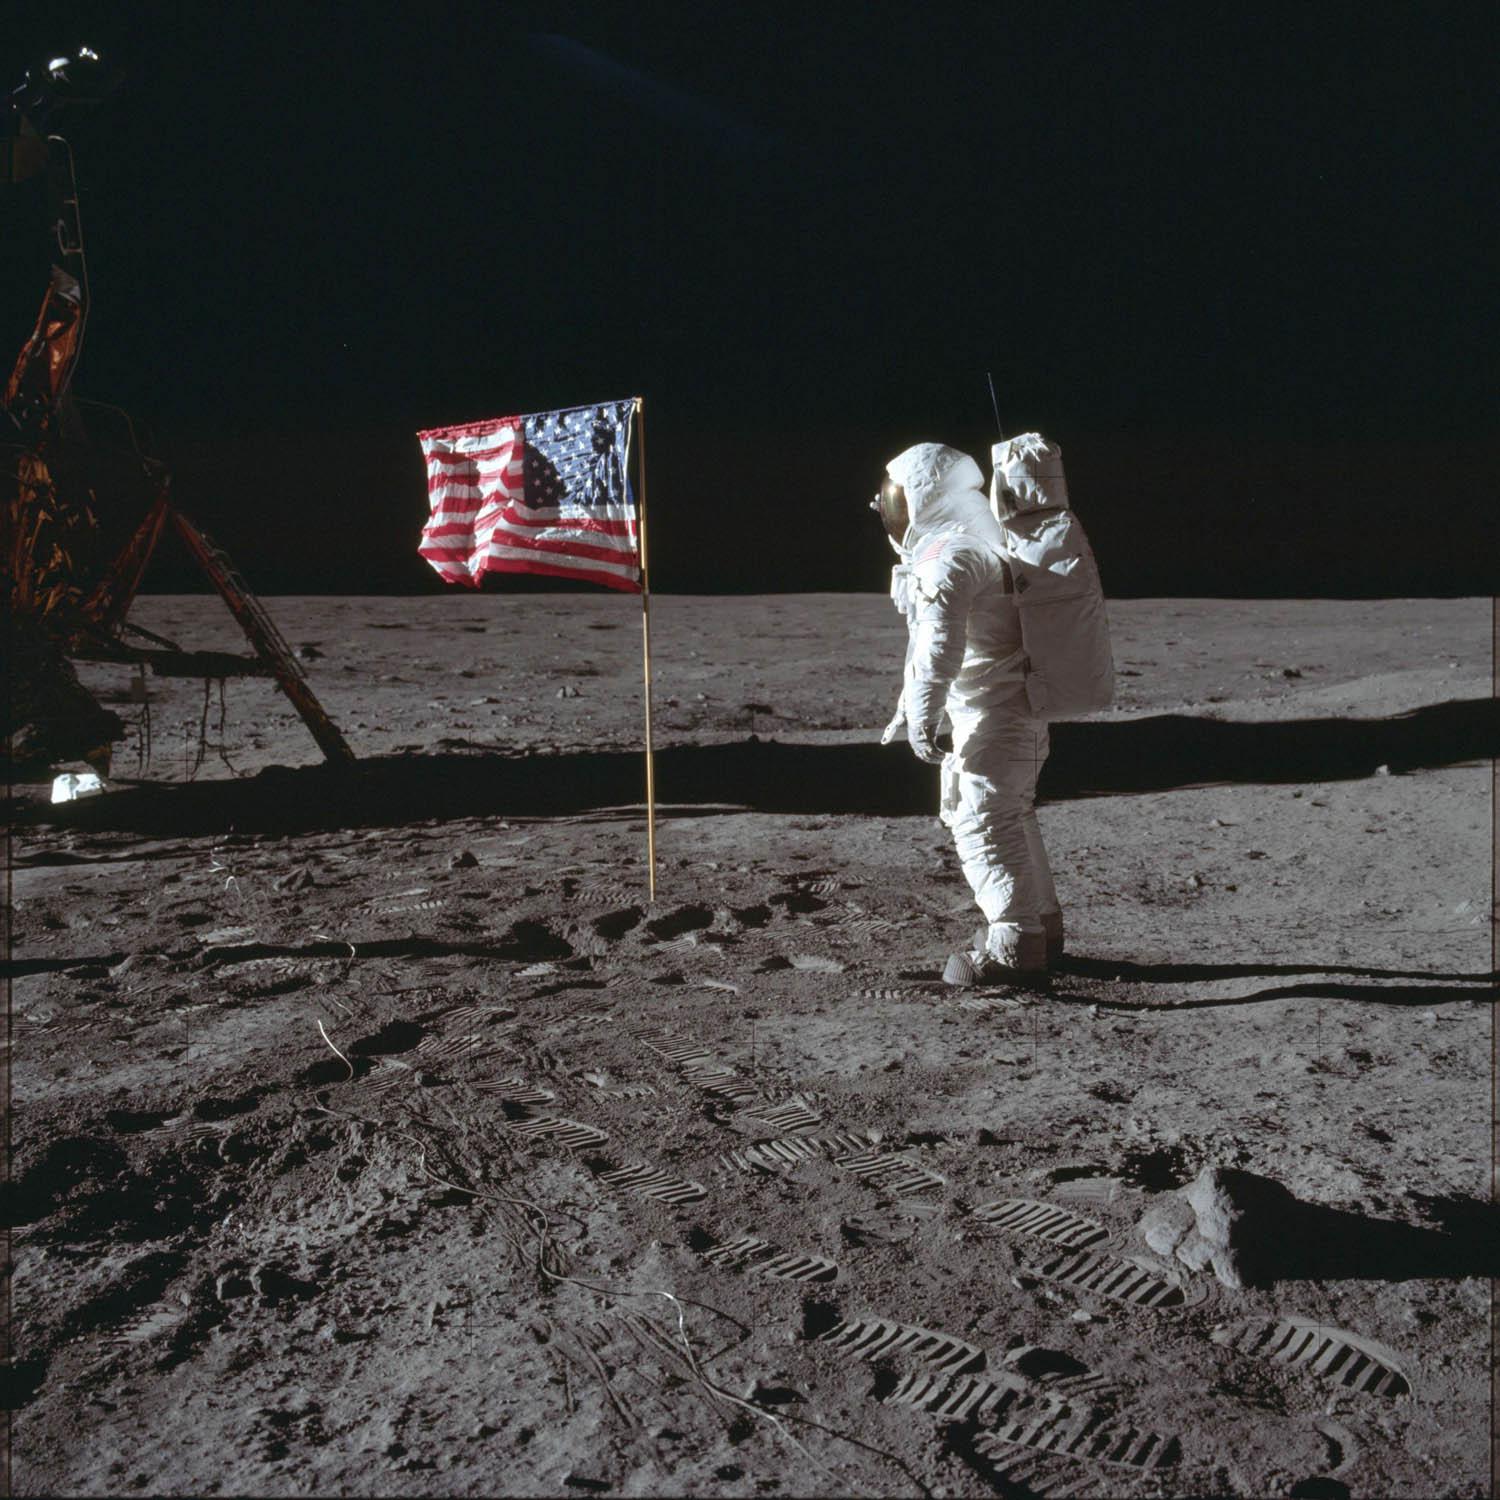 صورة تاريخية لرائد الفضاء باز الدرين أمام علم بلاده على القمر (1969)